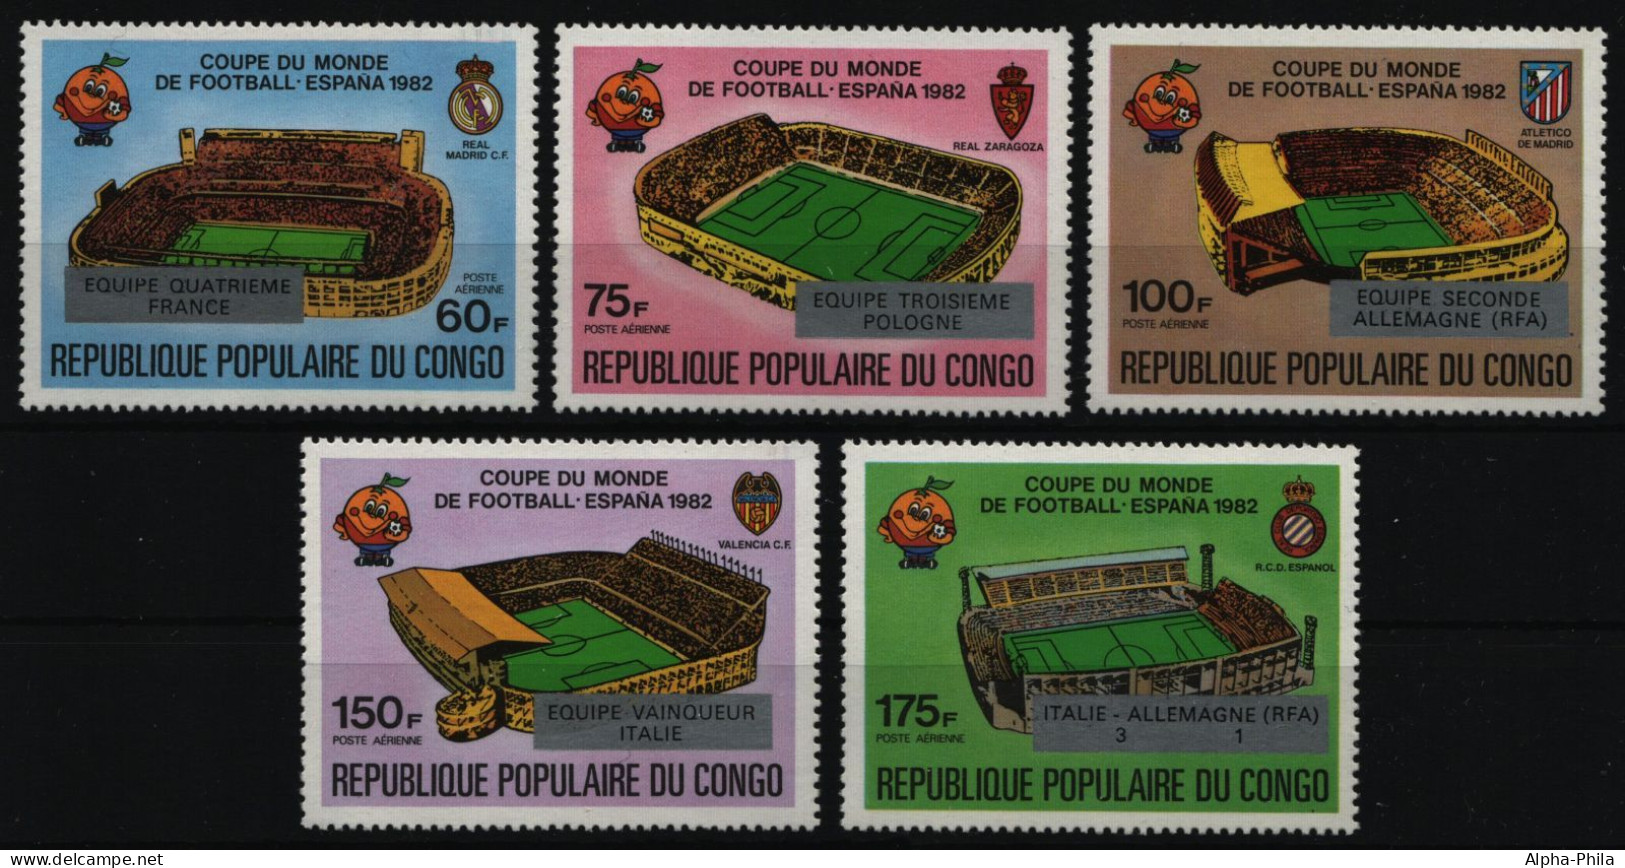 Kongo-Brazzaville 1982 - Mi-Nr. 883-887 ** - MNH - Fußball / Soccer - Neufs